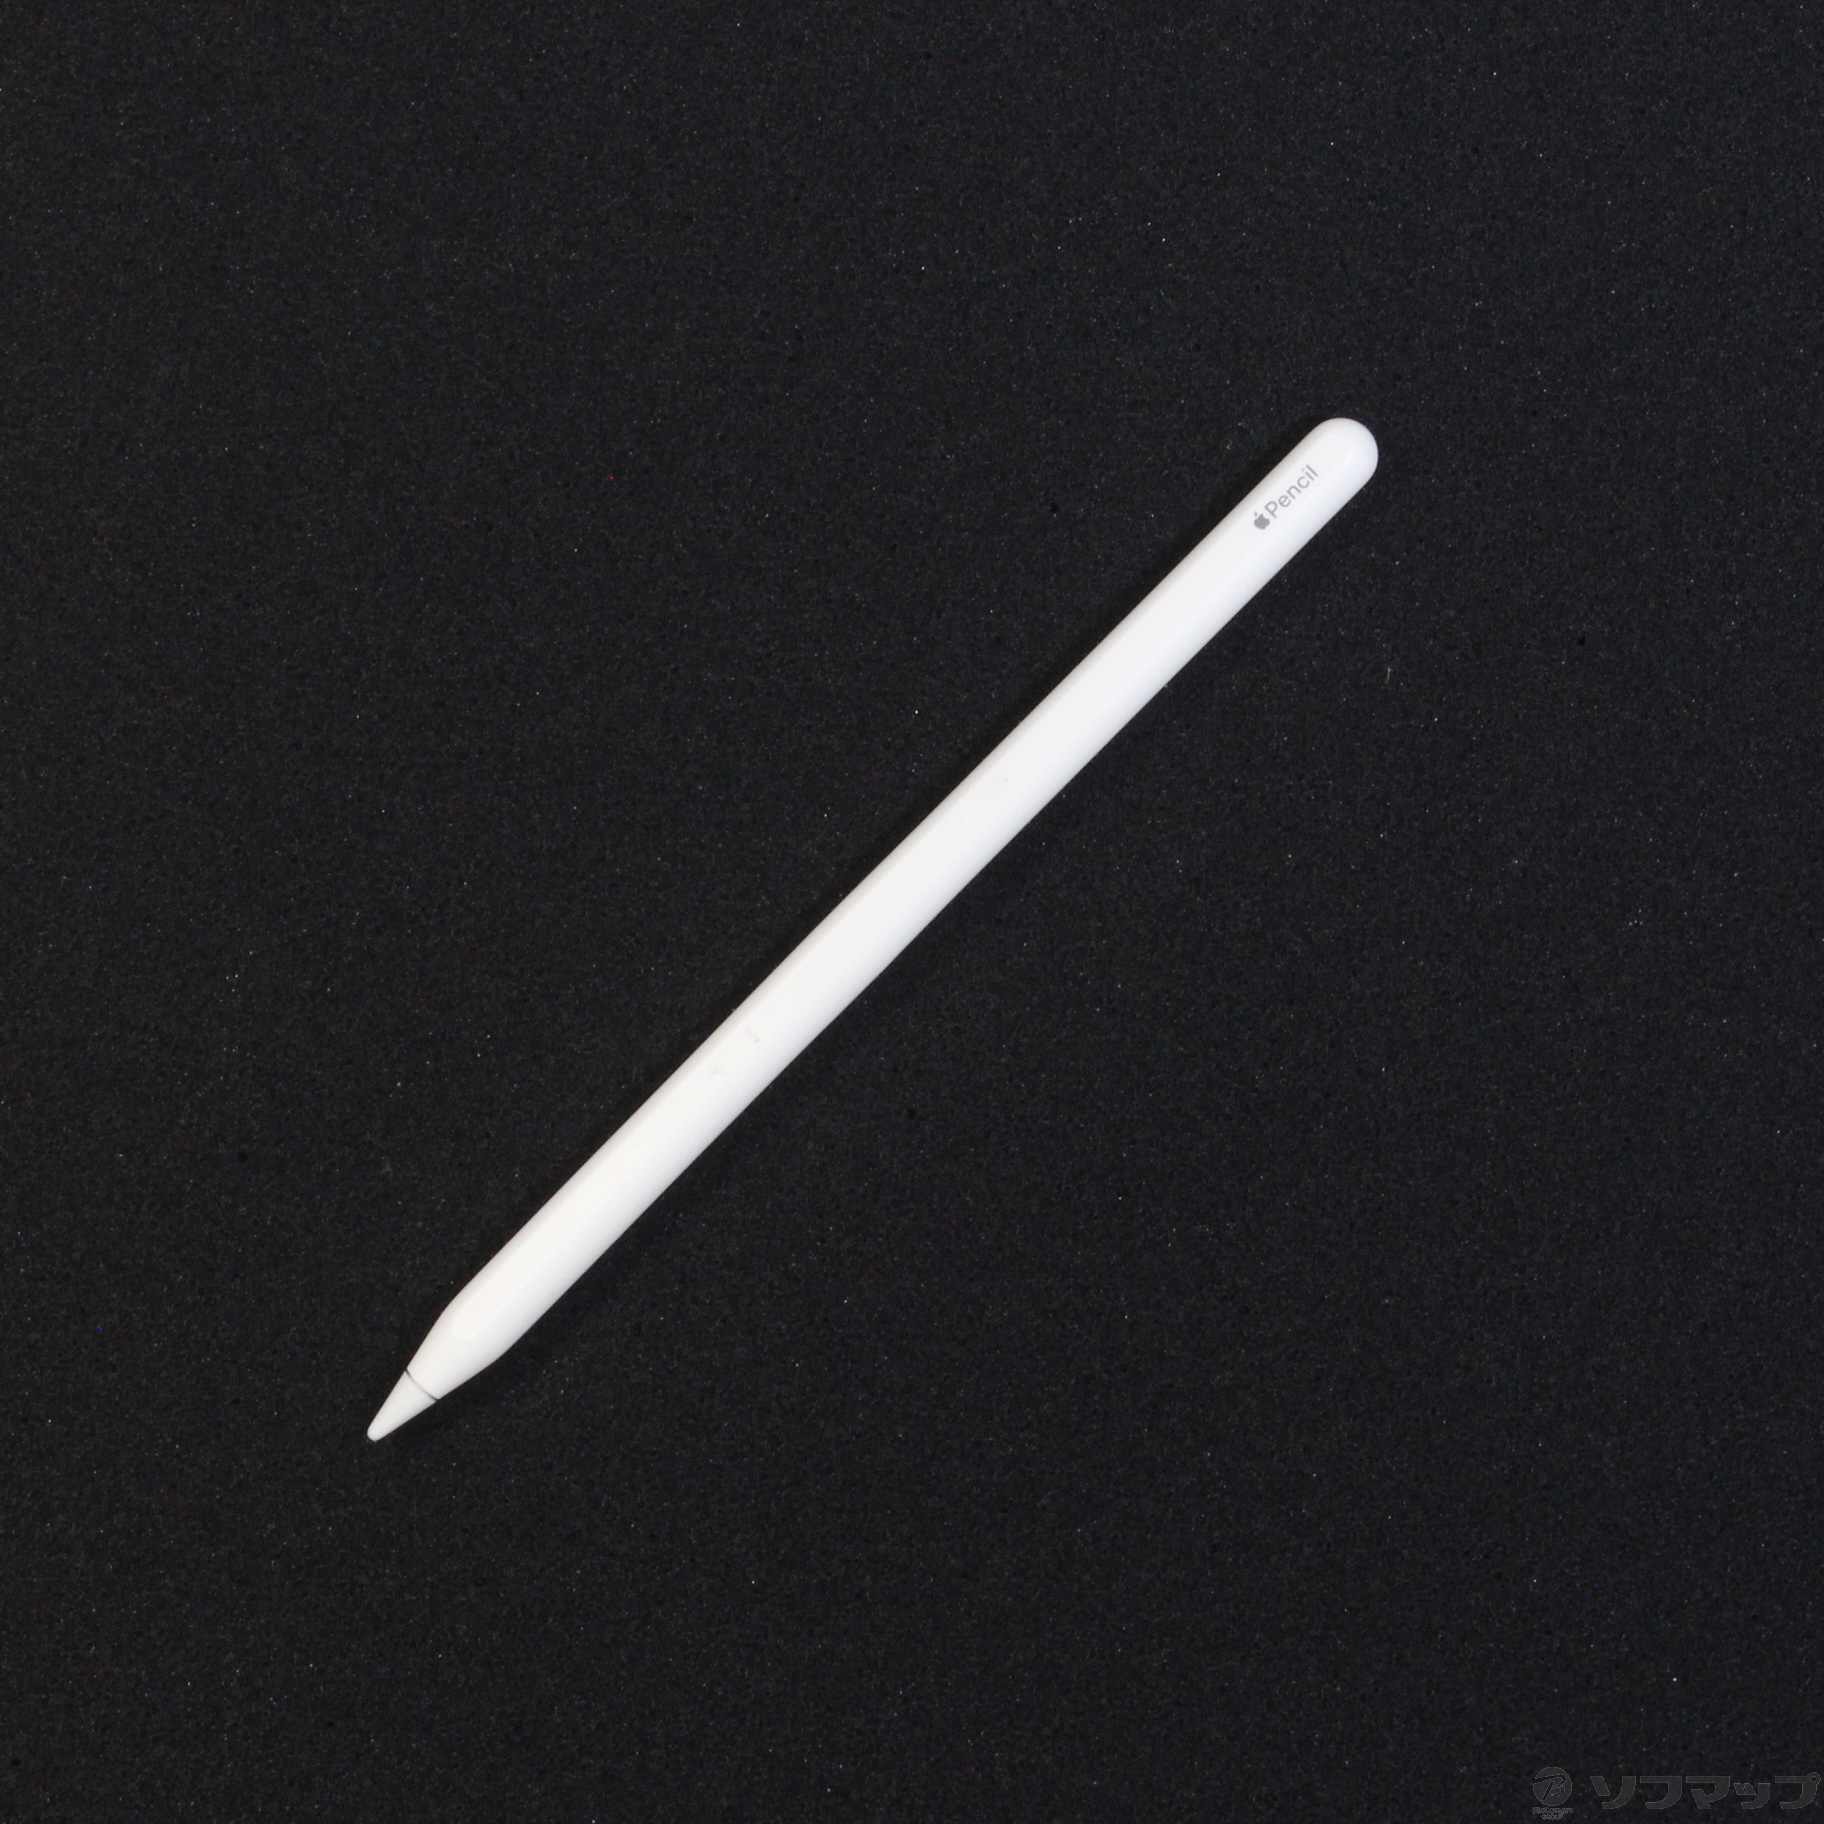 ほぼ新品 21/5/7購入 Apple pencil 第2世代 MU8F2J/A - スマートフォン 